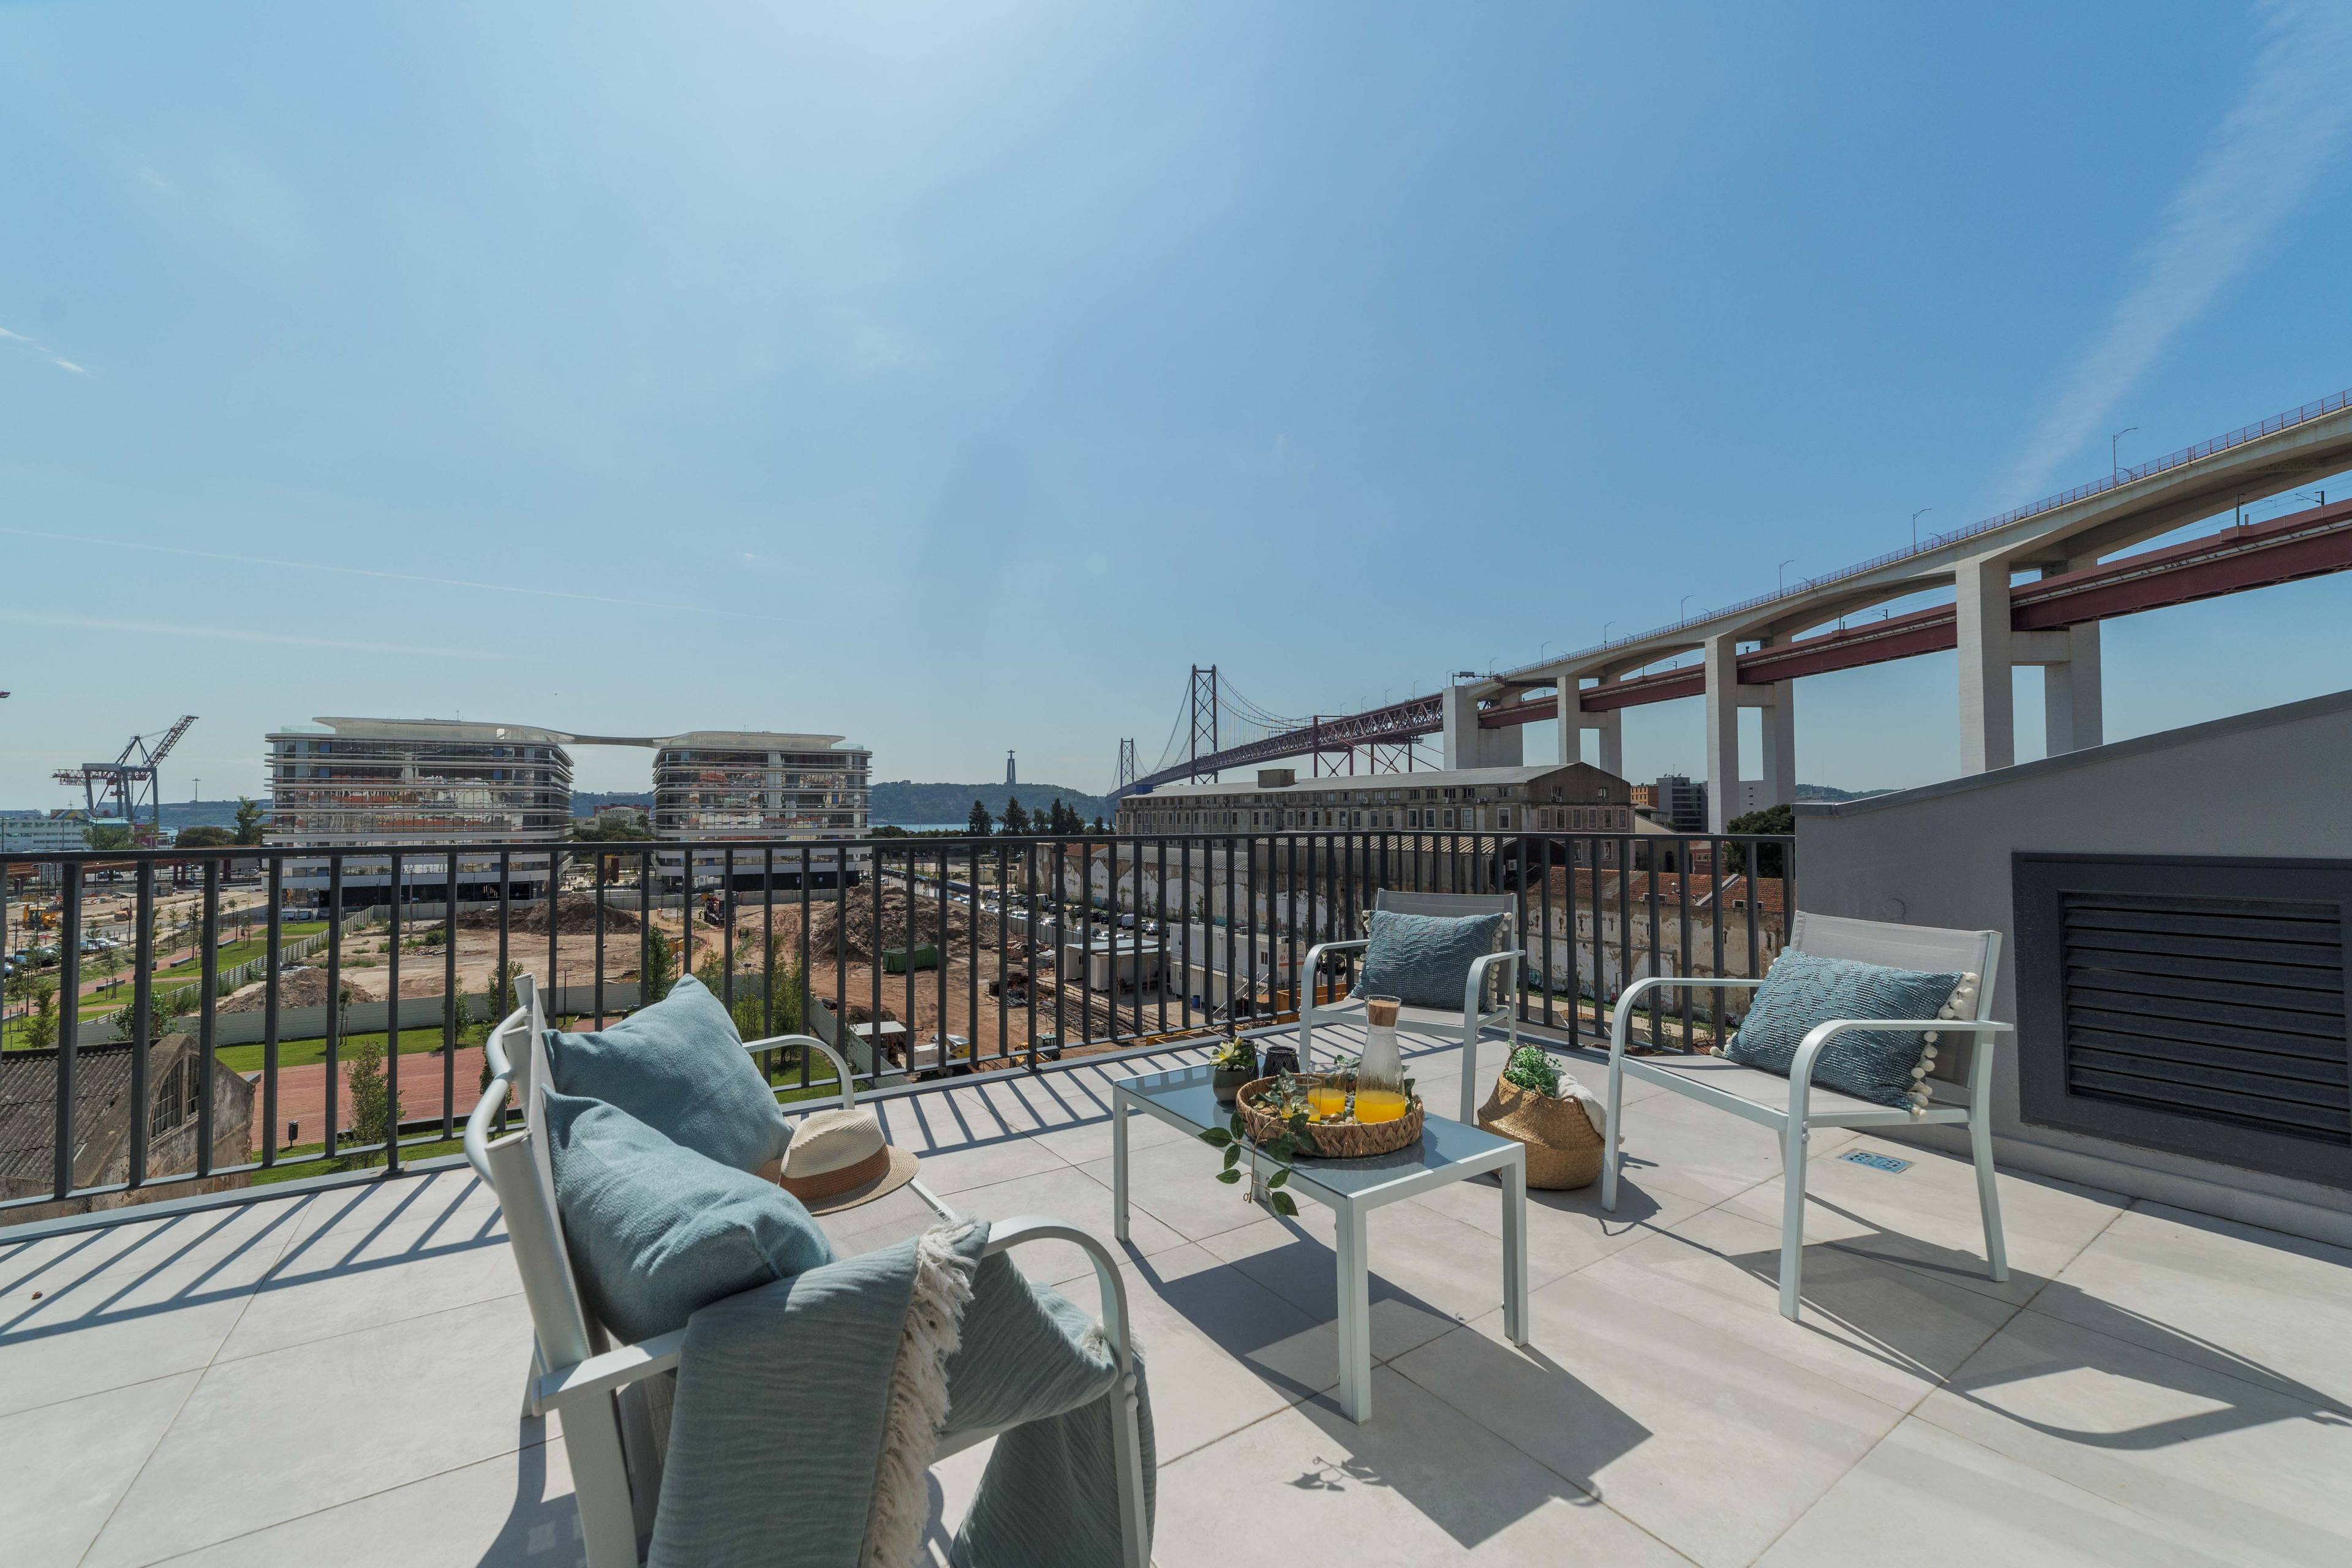 Penthouse | 30m2 Private Terrace | City Views | Jacuzzi | Parking Garage 2 Cars